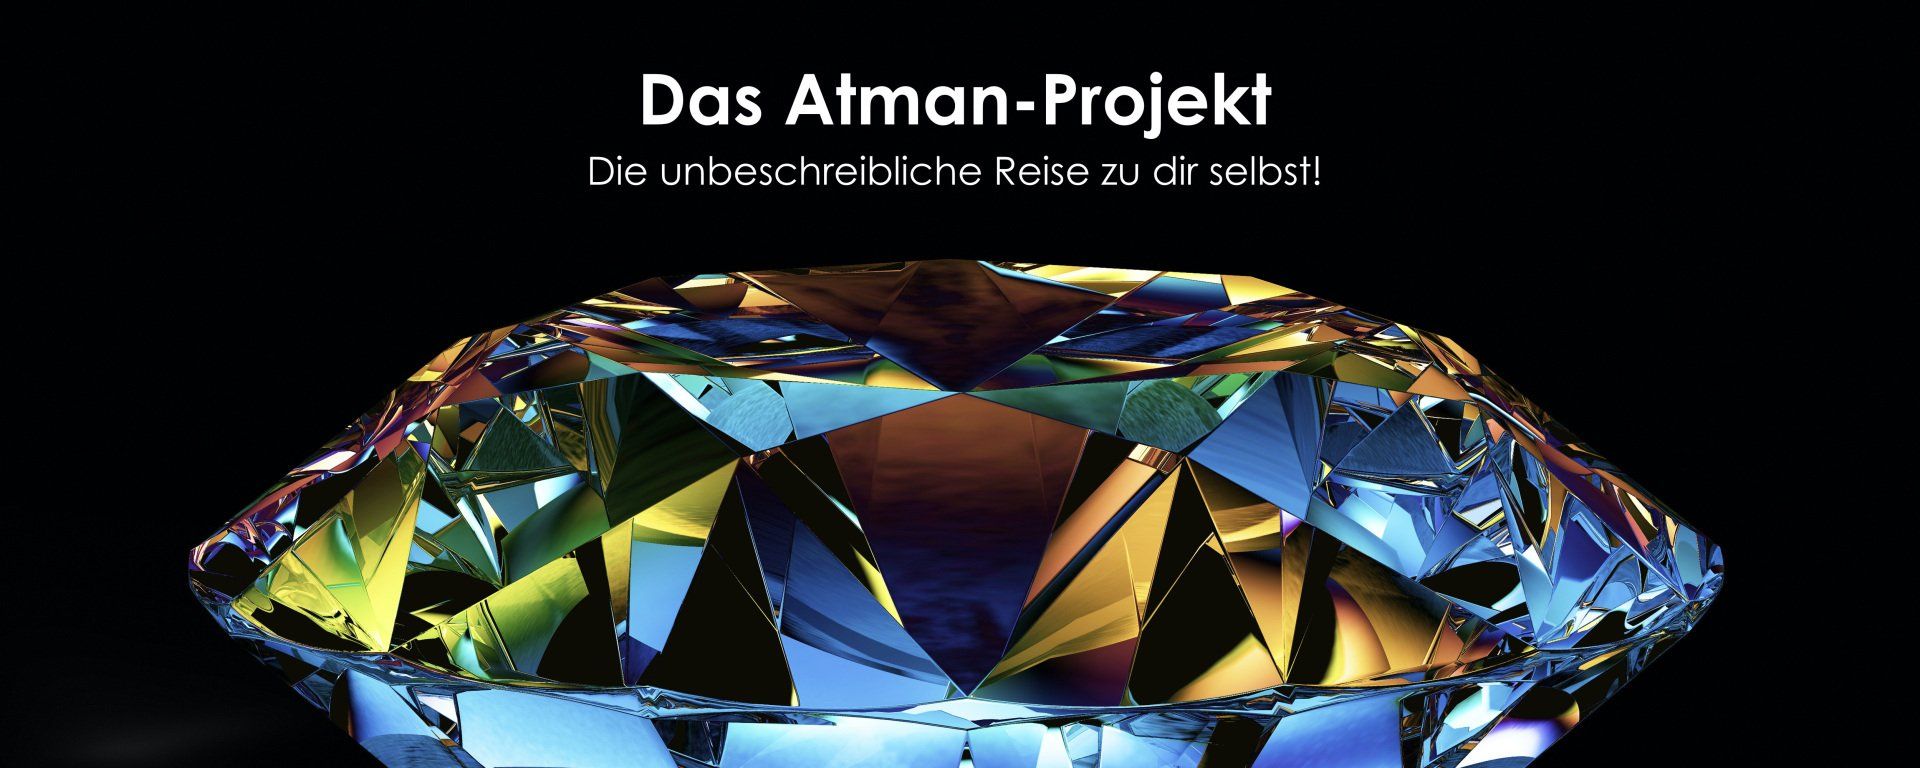 Das Atman-Projekt